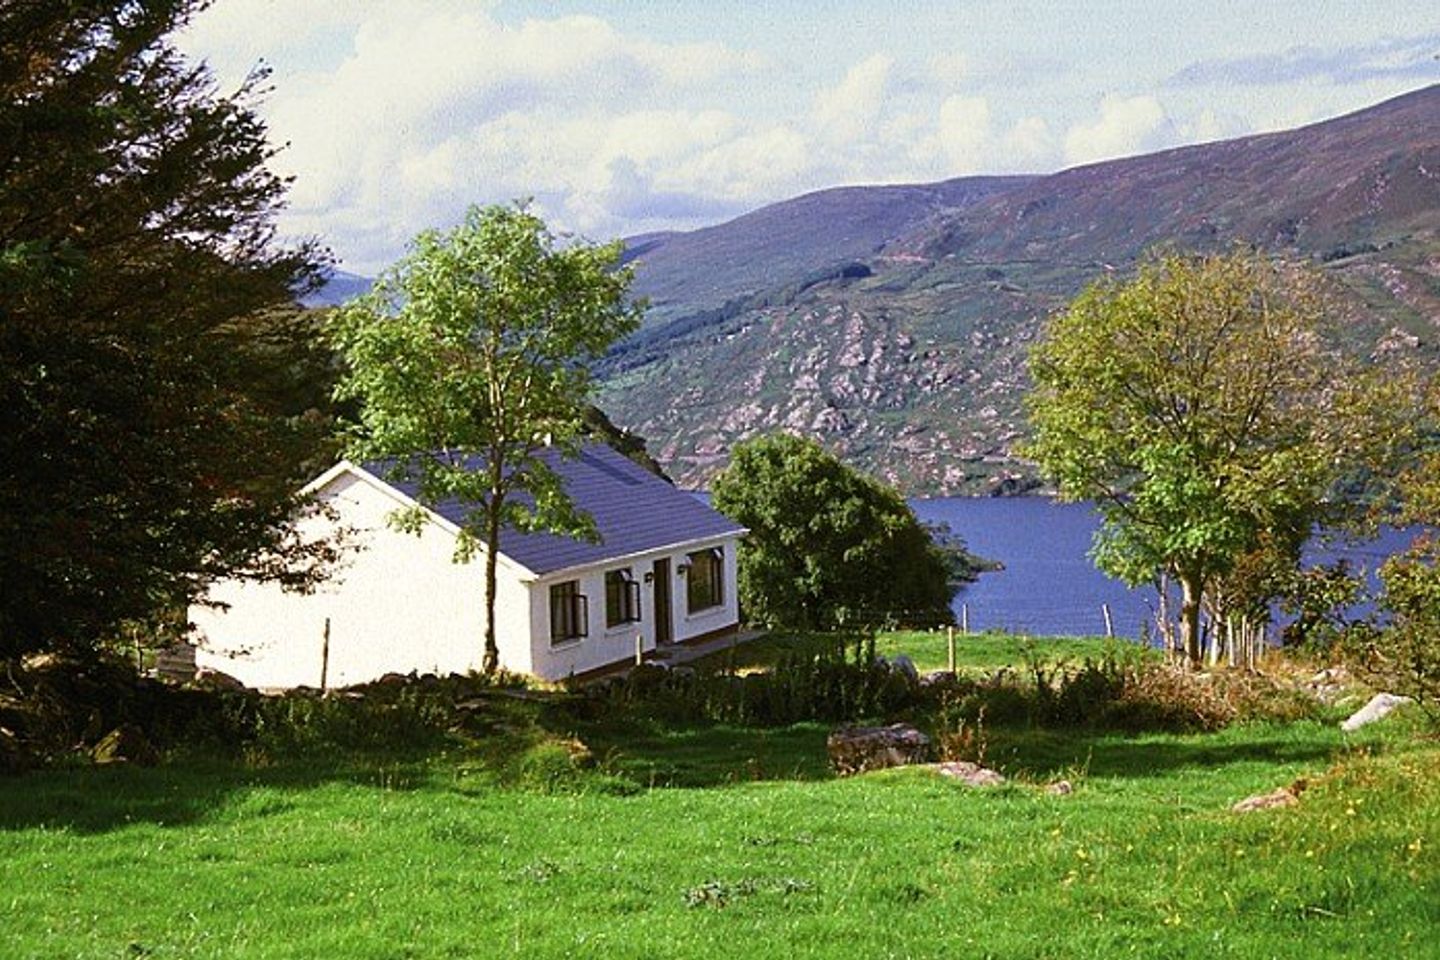 Caragh Lake (I174), Glenbeigh, Co. Kerry